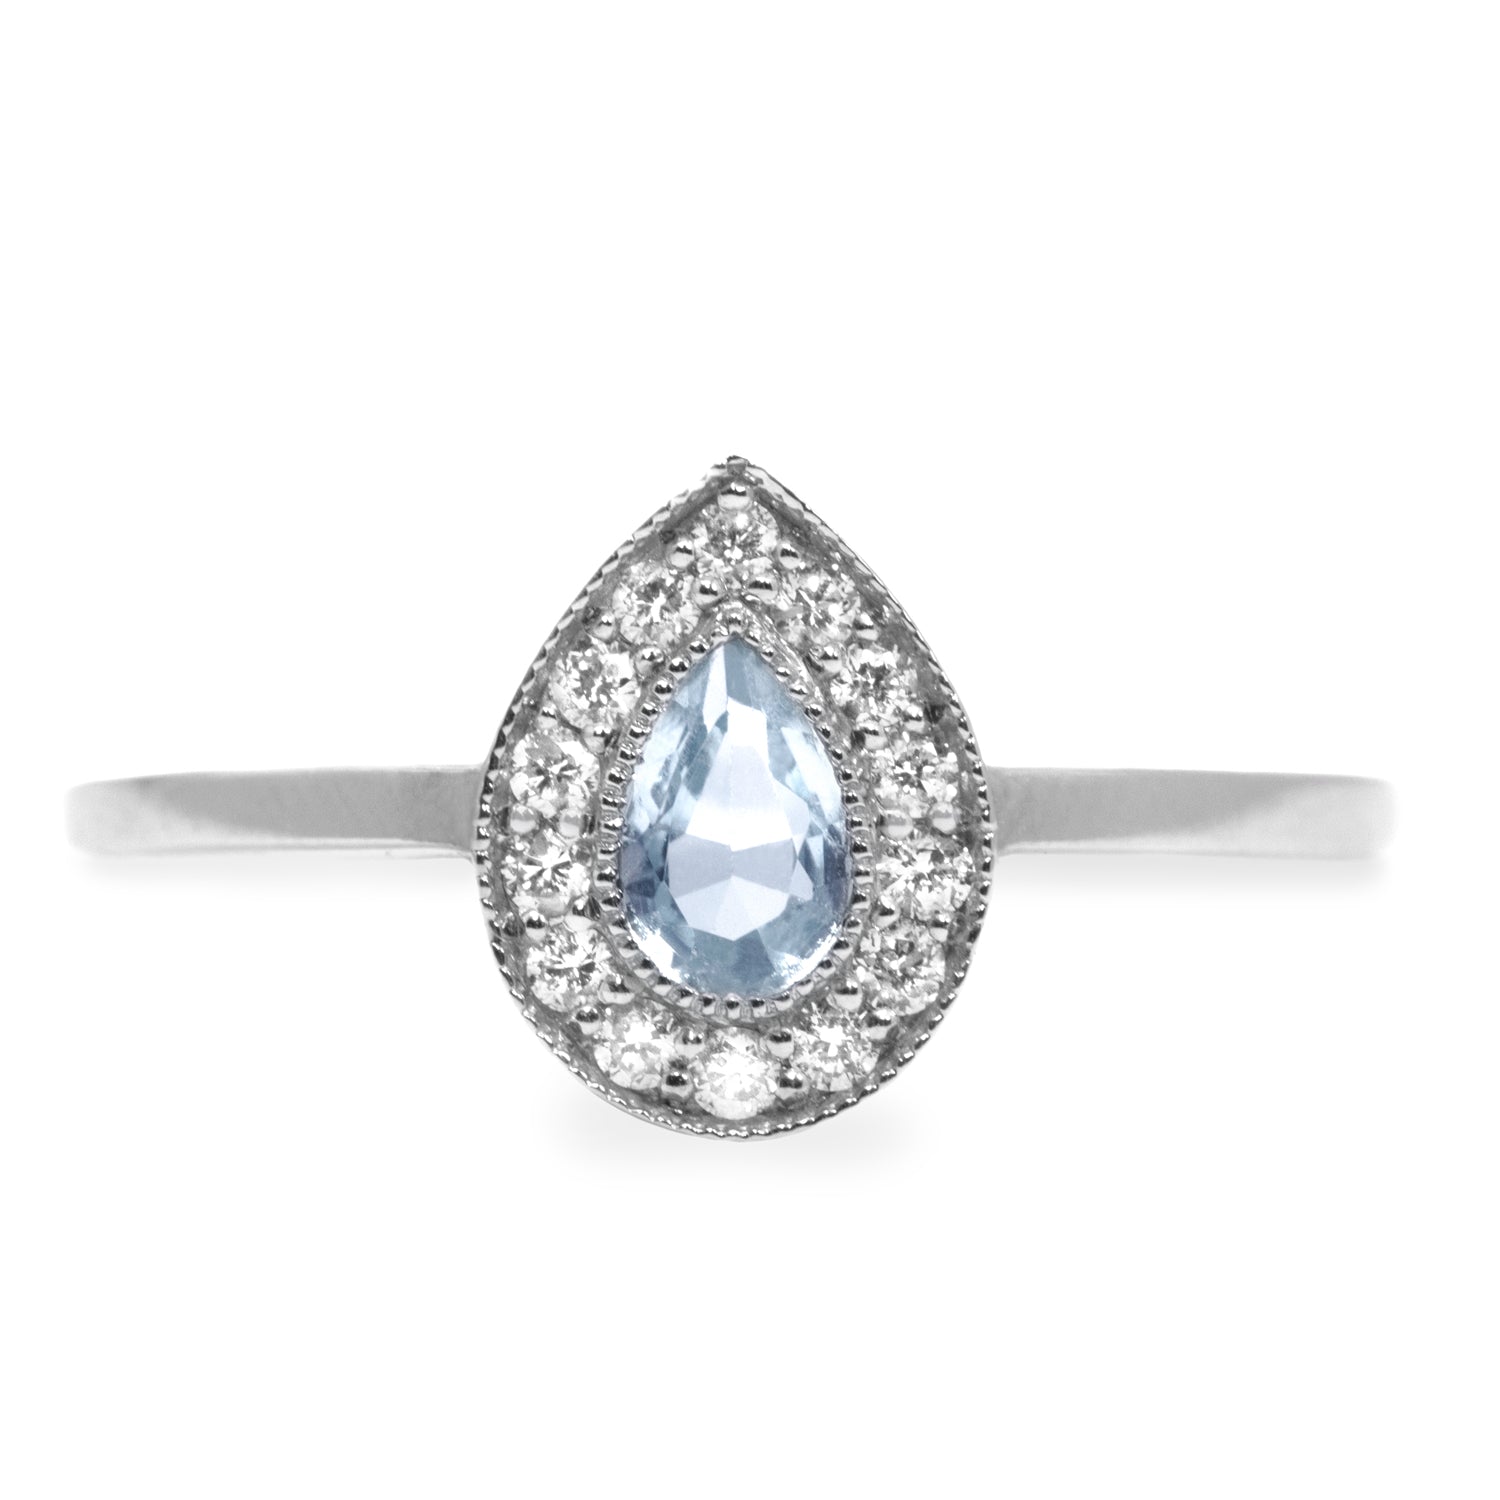 aqumarine engagemnet ring with diamonds